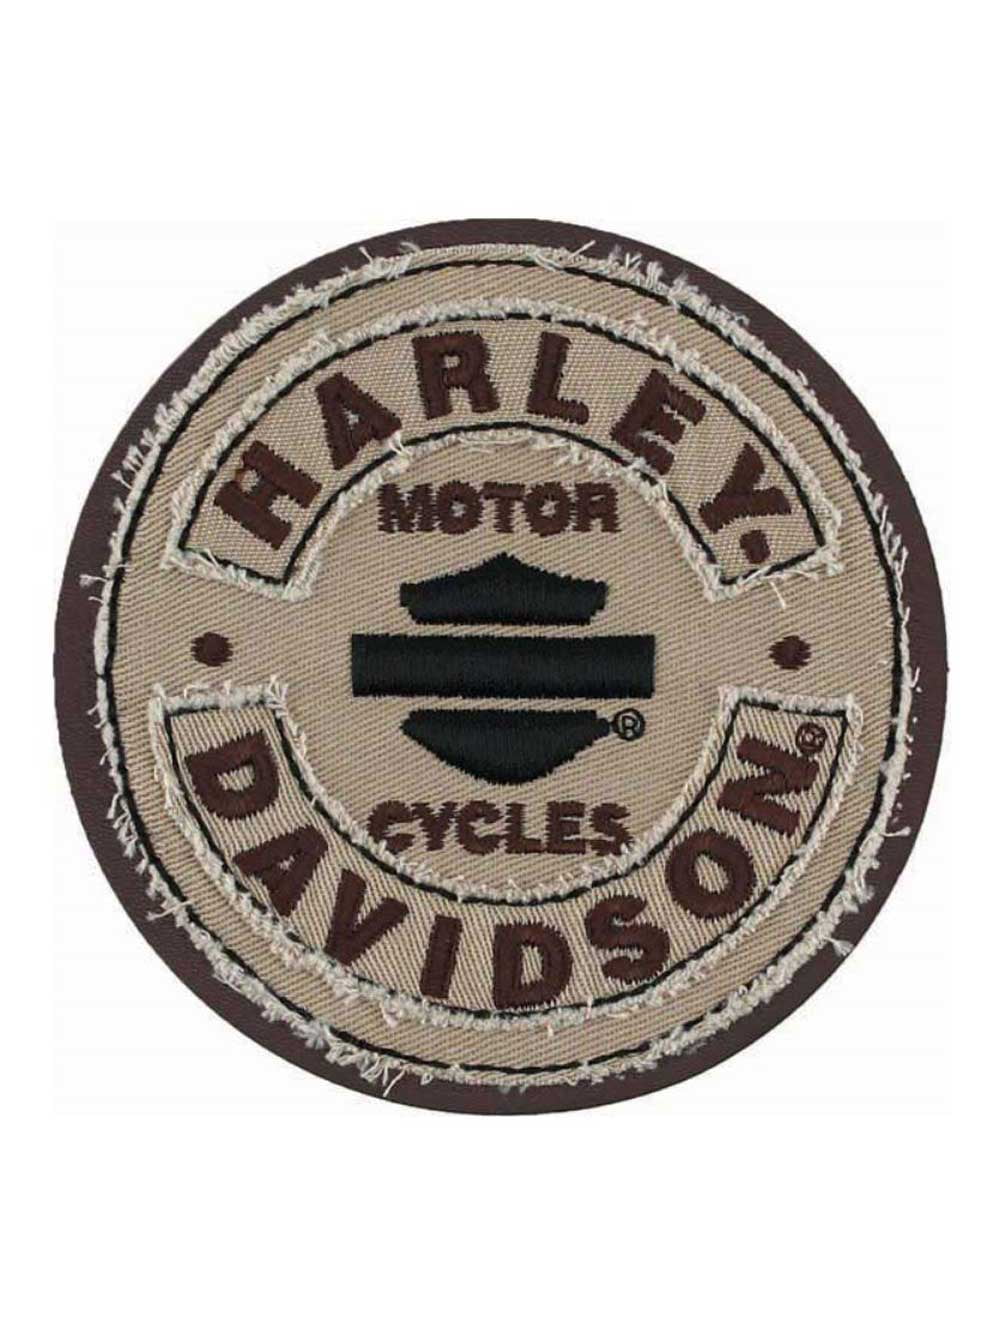 Harley-Davidson Embroidered Edgy Emblem Patch, 8 x 6, Black & Burgundy EM321364, Size: Large, BlackBurgundy